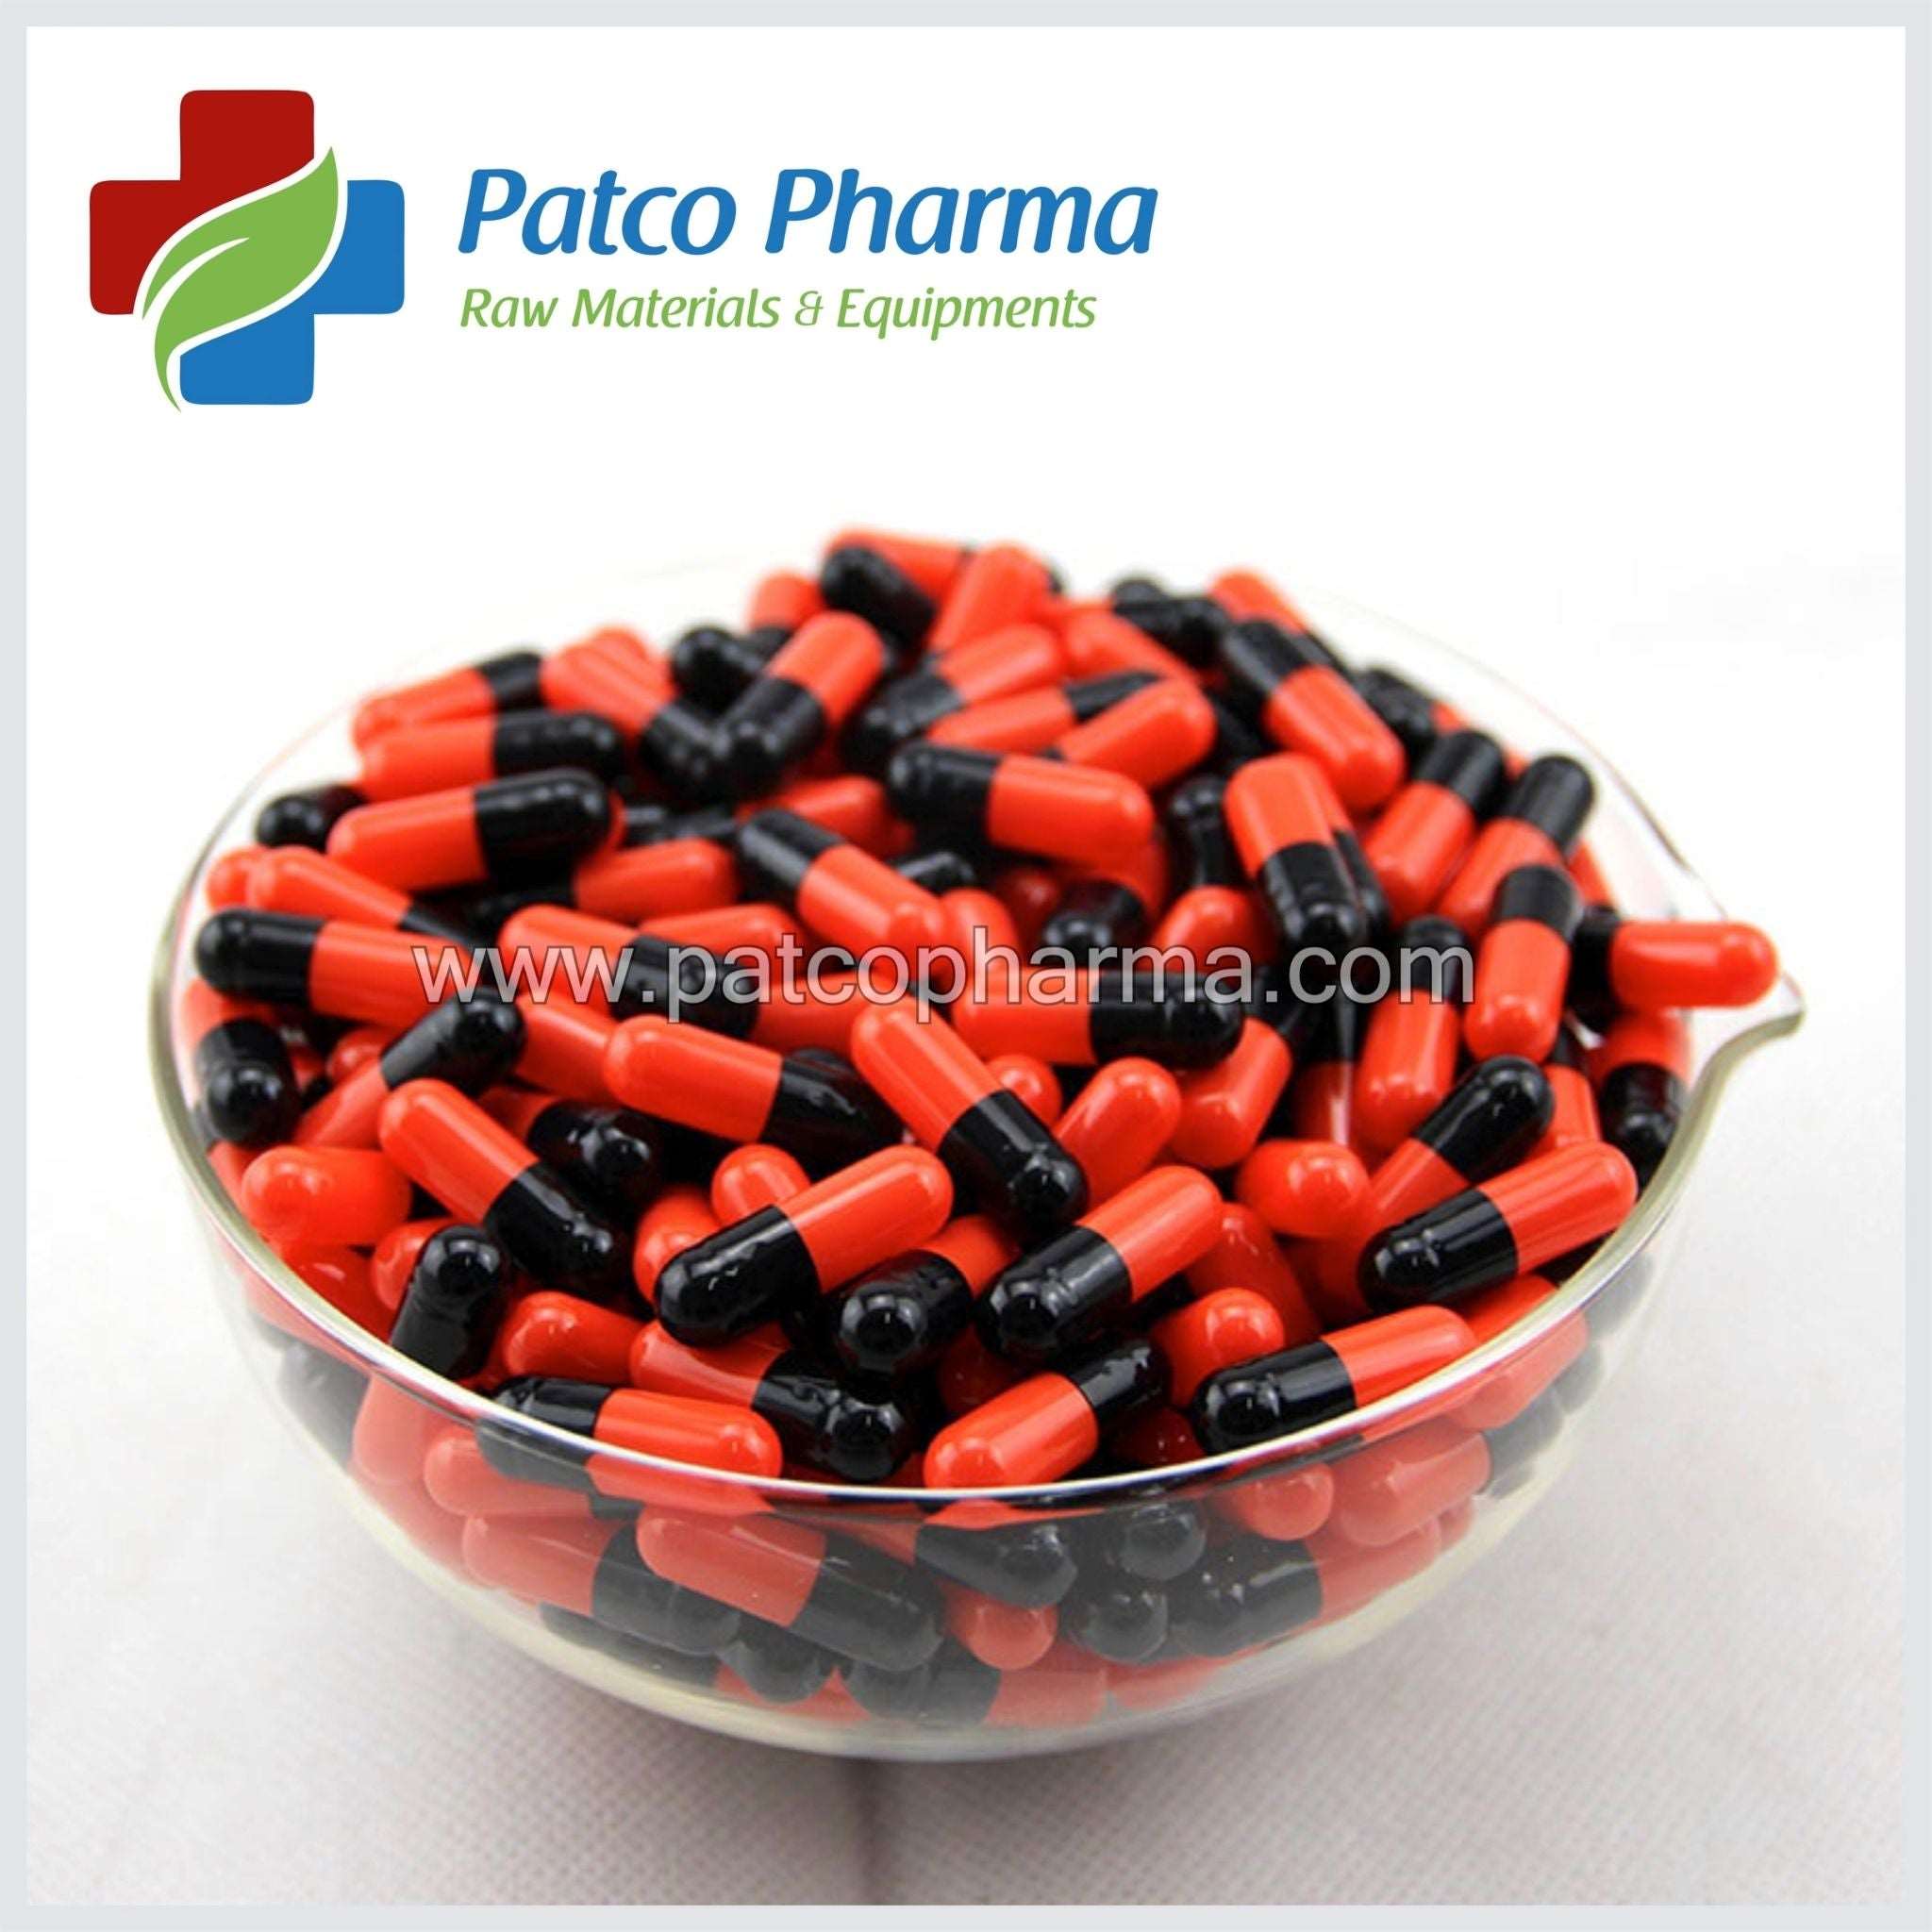 Size 0 Orange/Black Empty Gelatin Capsule, Patco Pharma, Gelatin Capsules, size-0-orange-black-empty-gelatin-capsule, "500 mg capsule, Gelatin Capsule, Size 0 Capsule", Patco Pharma